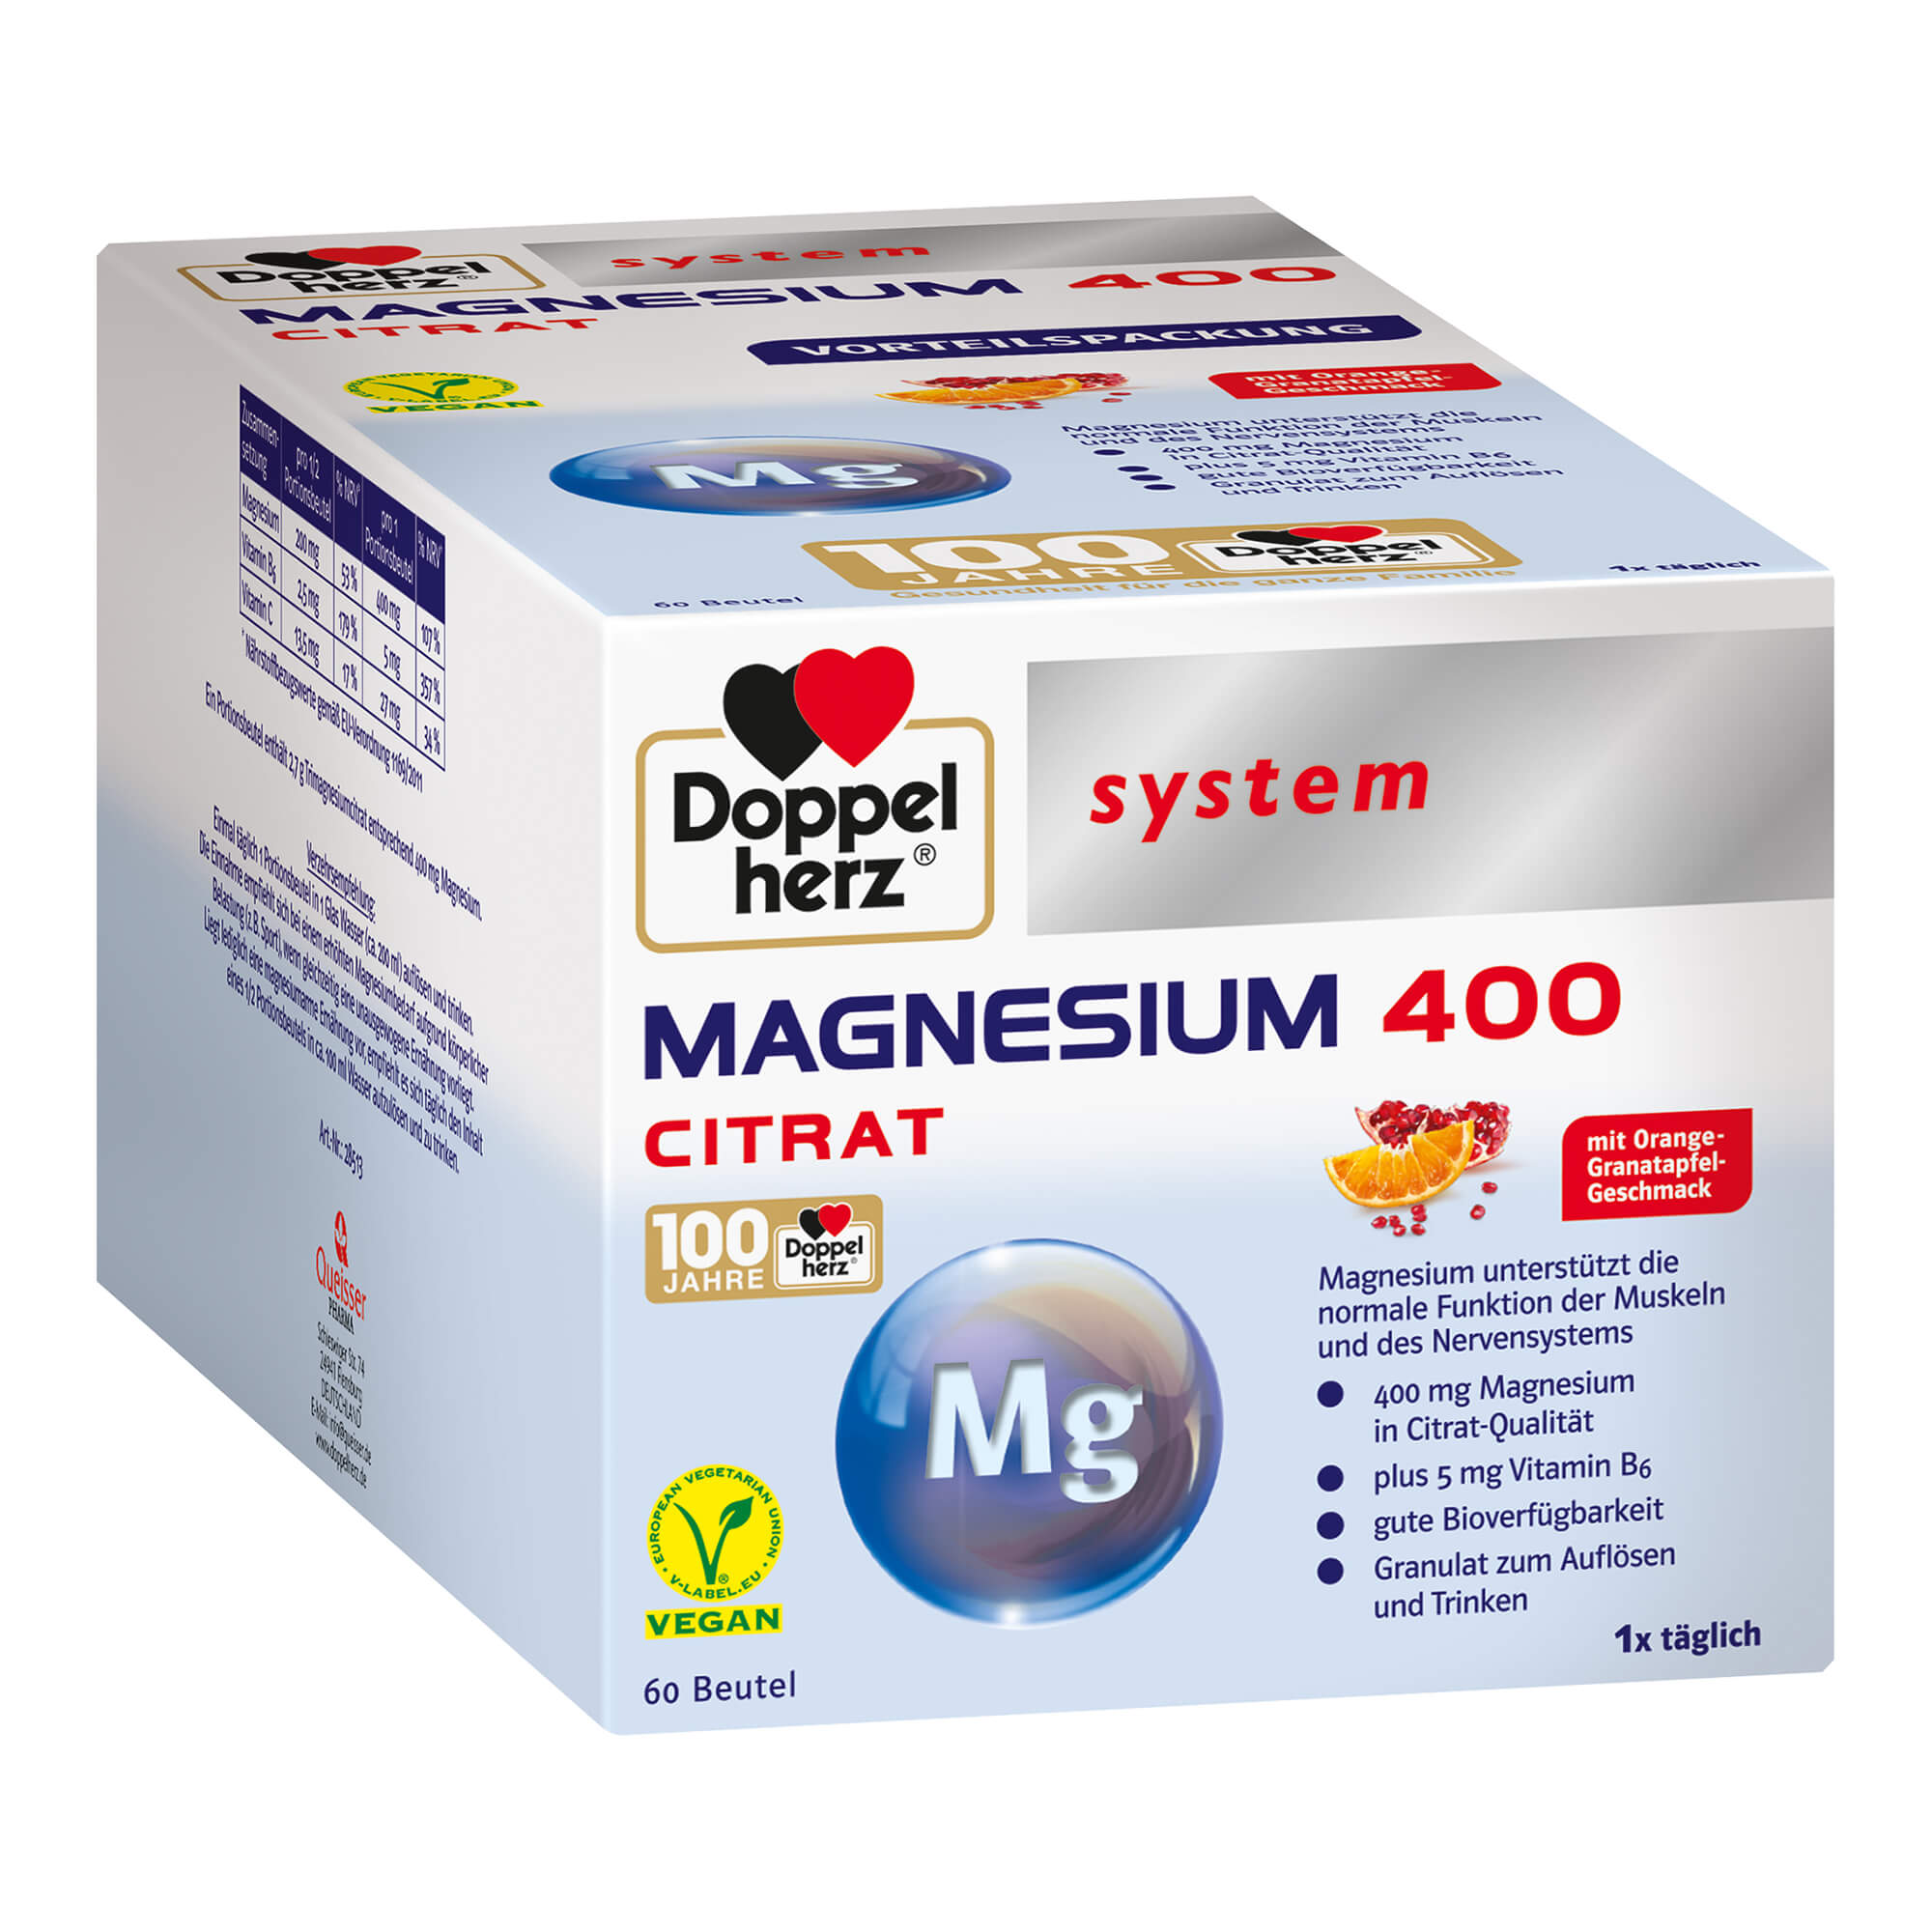 Magnesium als Beitrag für die normale Funktion der Muskeln und des Nervensystems. Nahrungsergänzungsmittel mit Orange-Granatapfel-Geschmack.